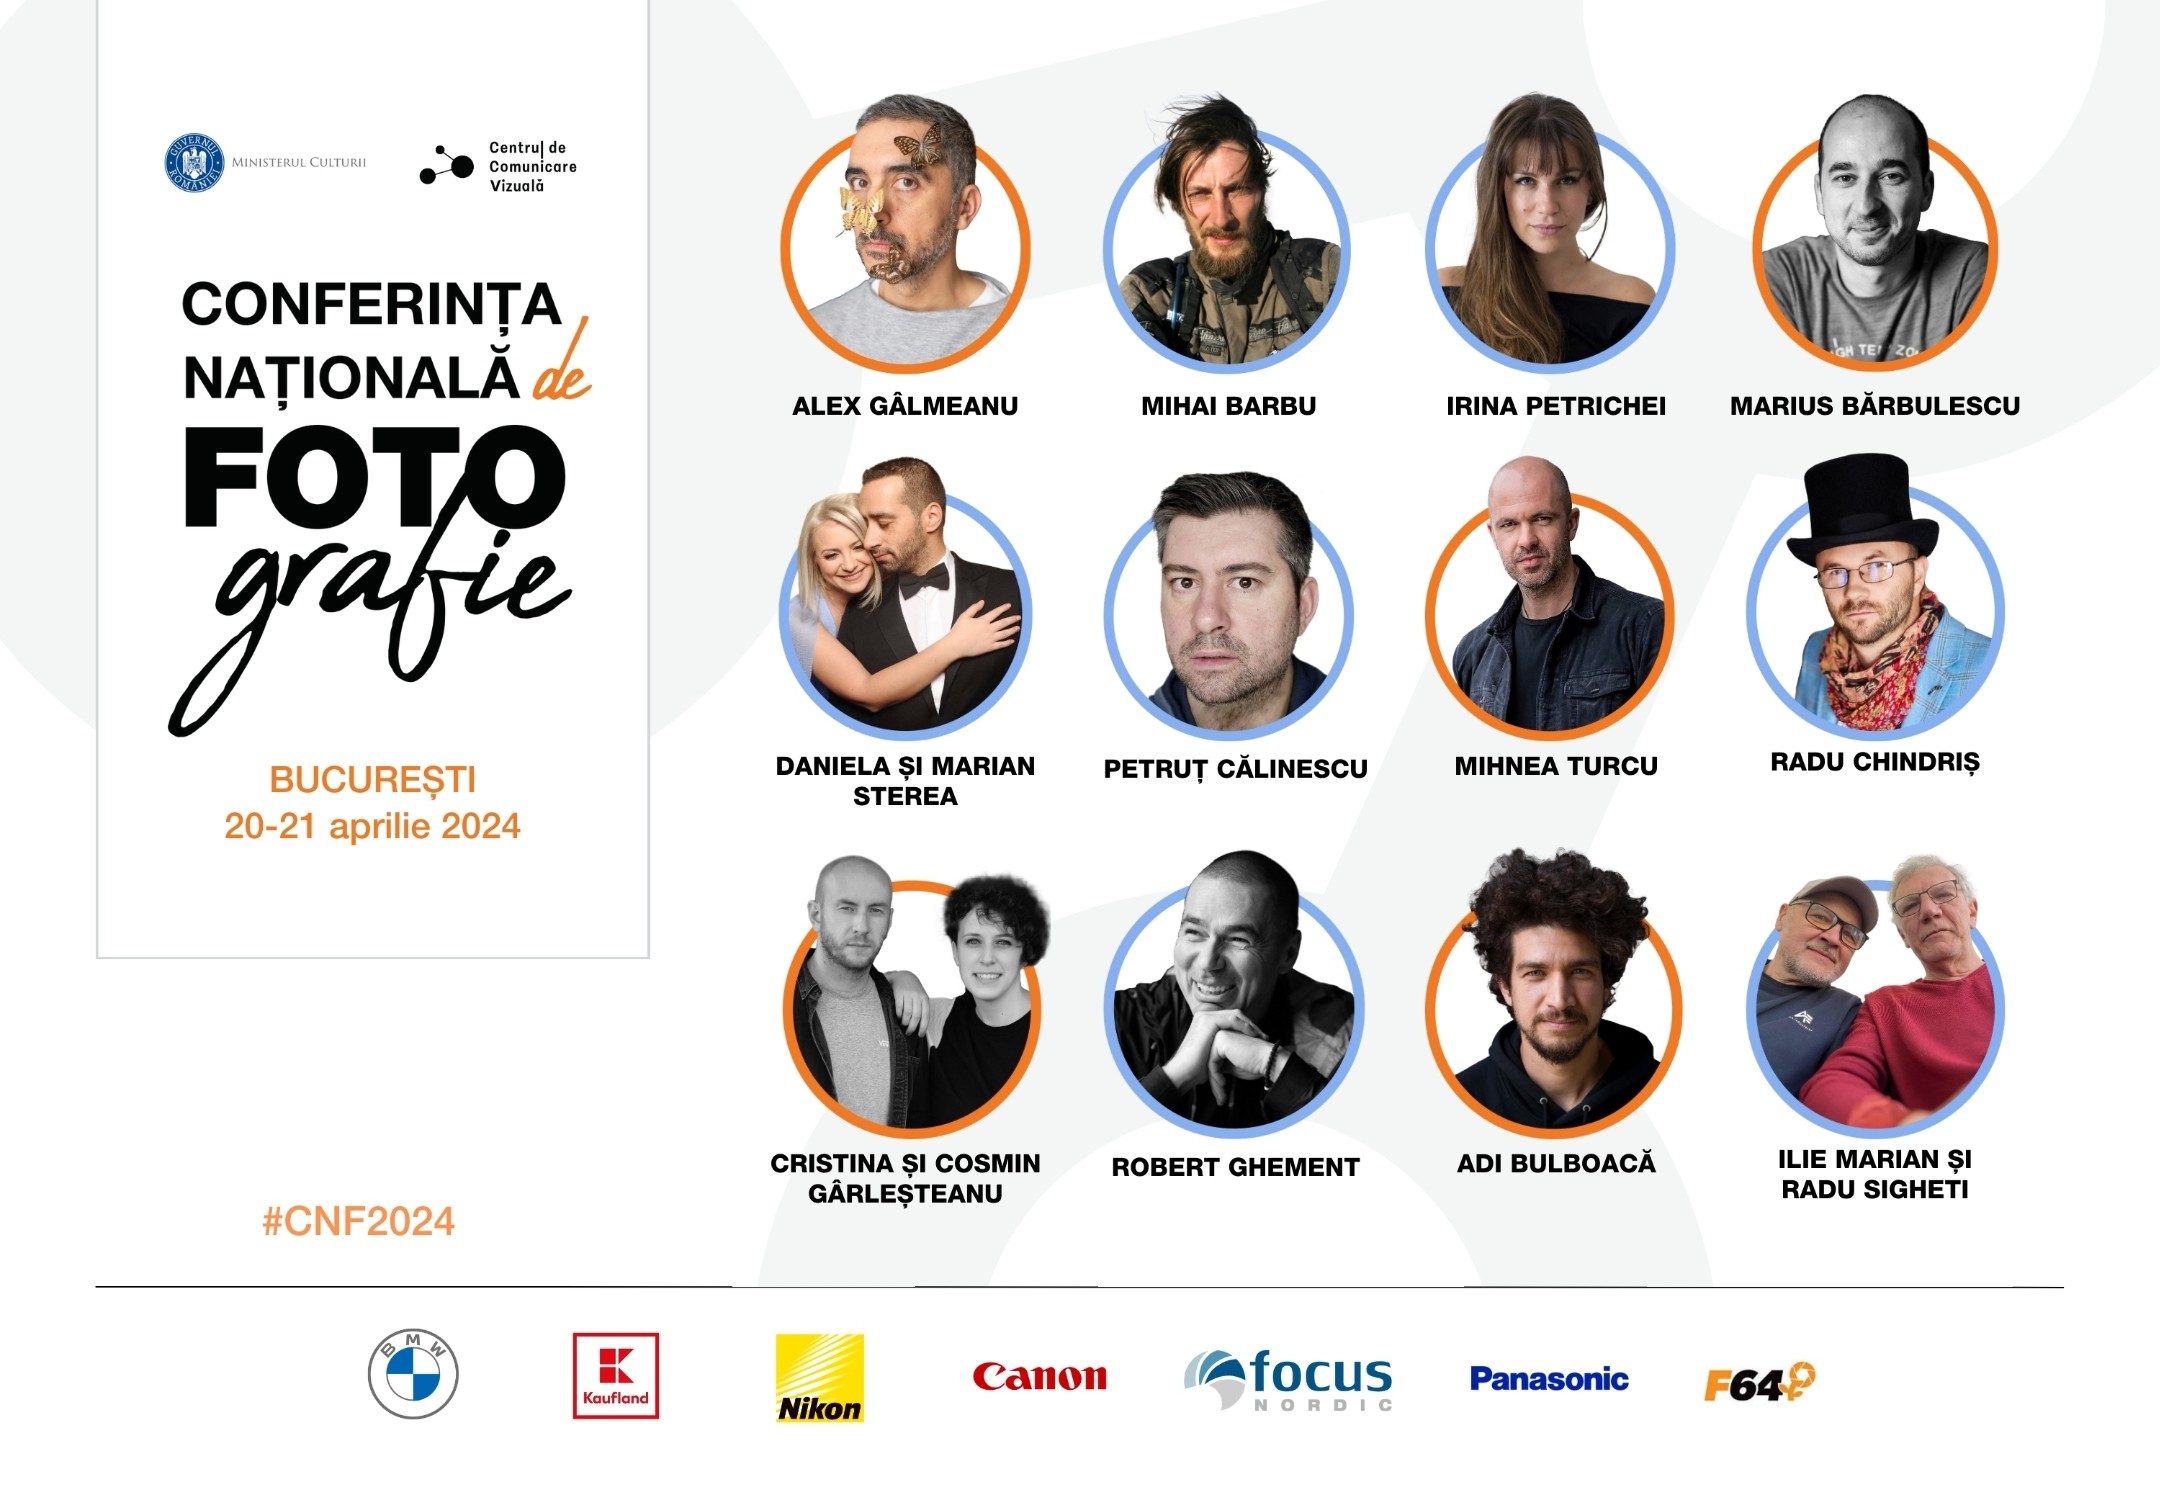 Conferința Națională de Fotografie 2024, organizată la București între 20 și 21 aprilie